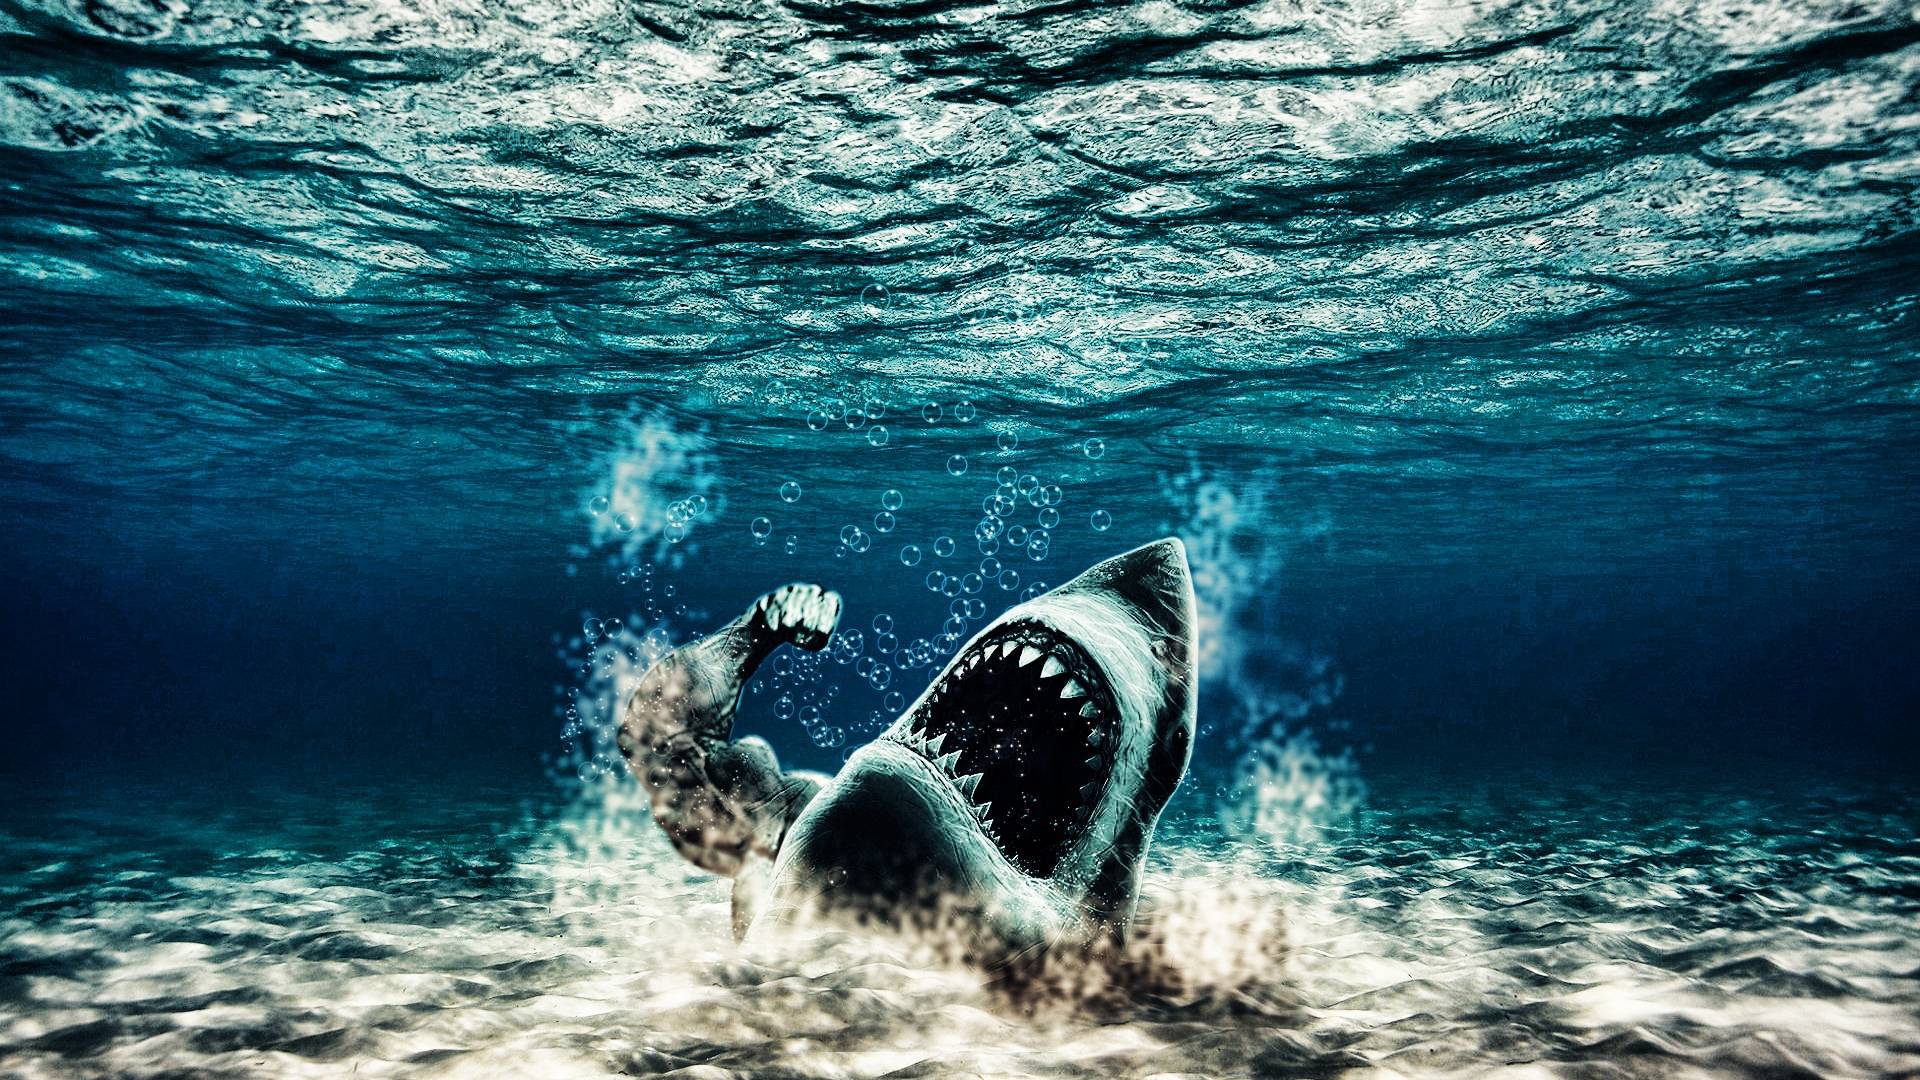 Wallpaper For > Shark Wallpaper HD 1920x1080